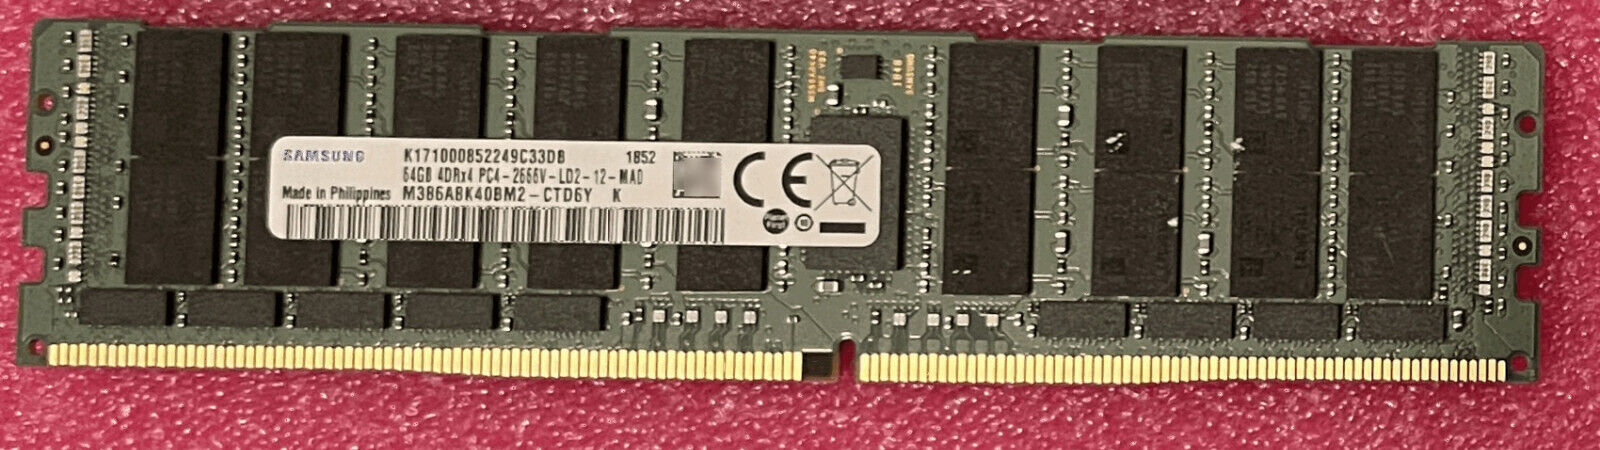 Tested Samsung 64GB PC4-21300 ddr4 2666MHz  Server LRDIMM RAM M386A8K40BM2-CTD